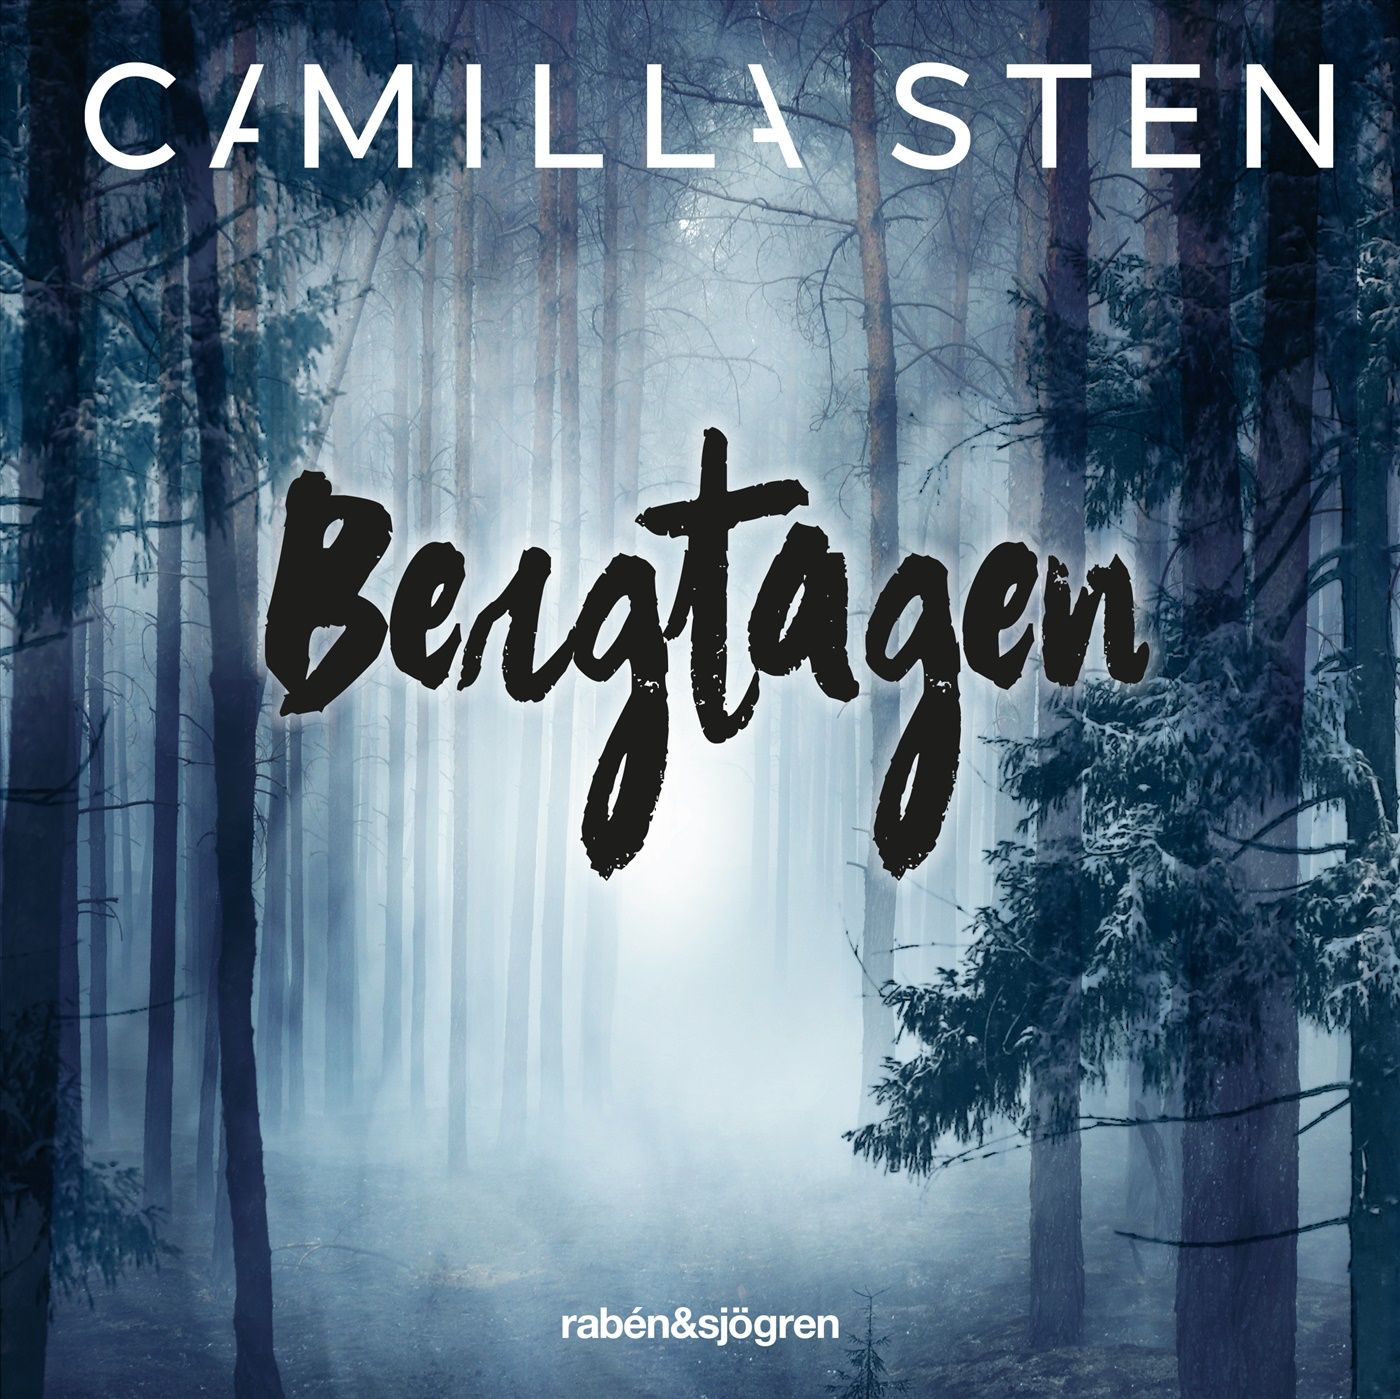 Bergtagen, audiobook by Camilla Sten